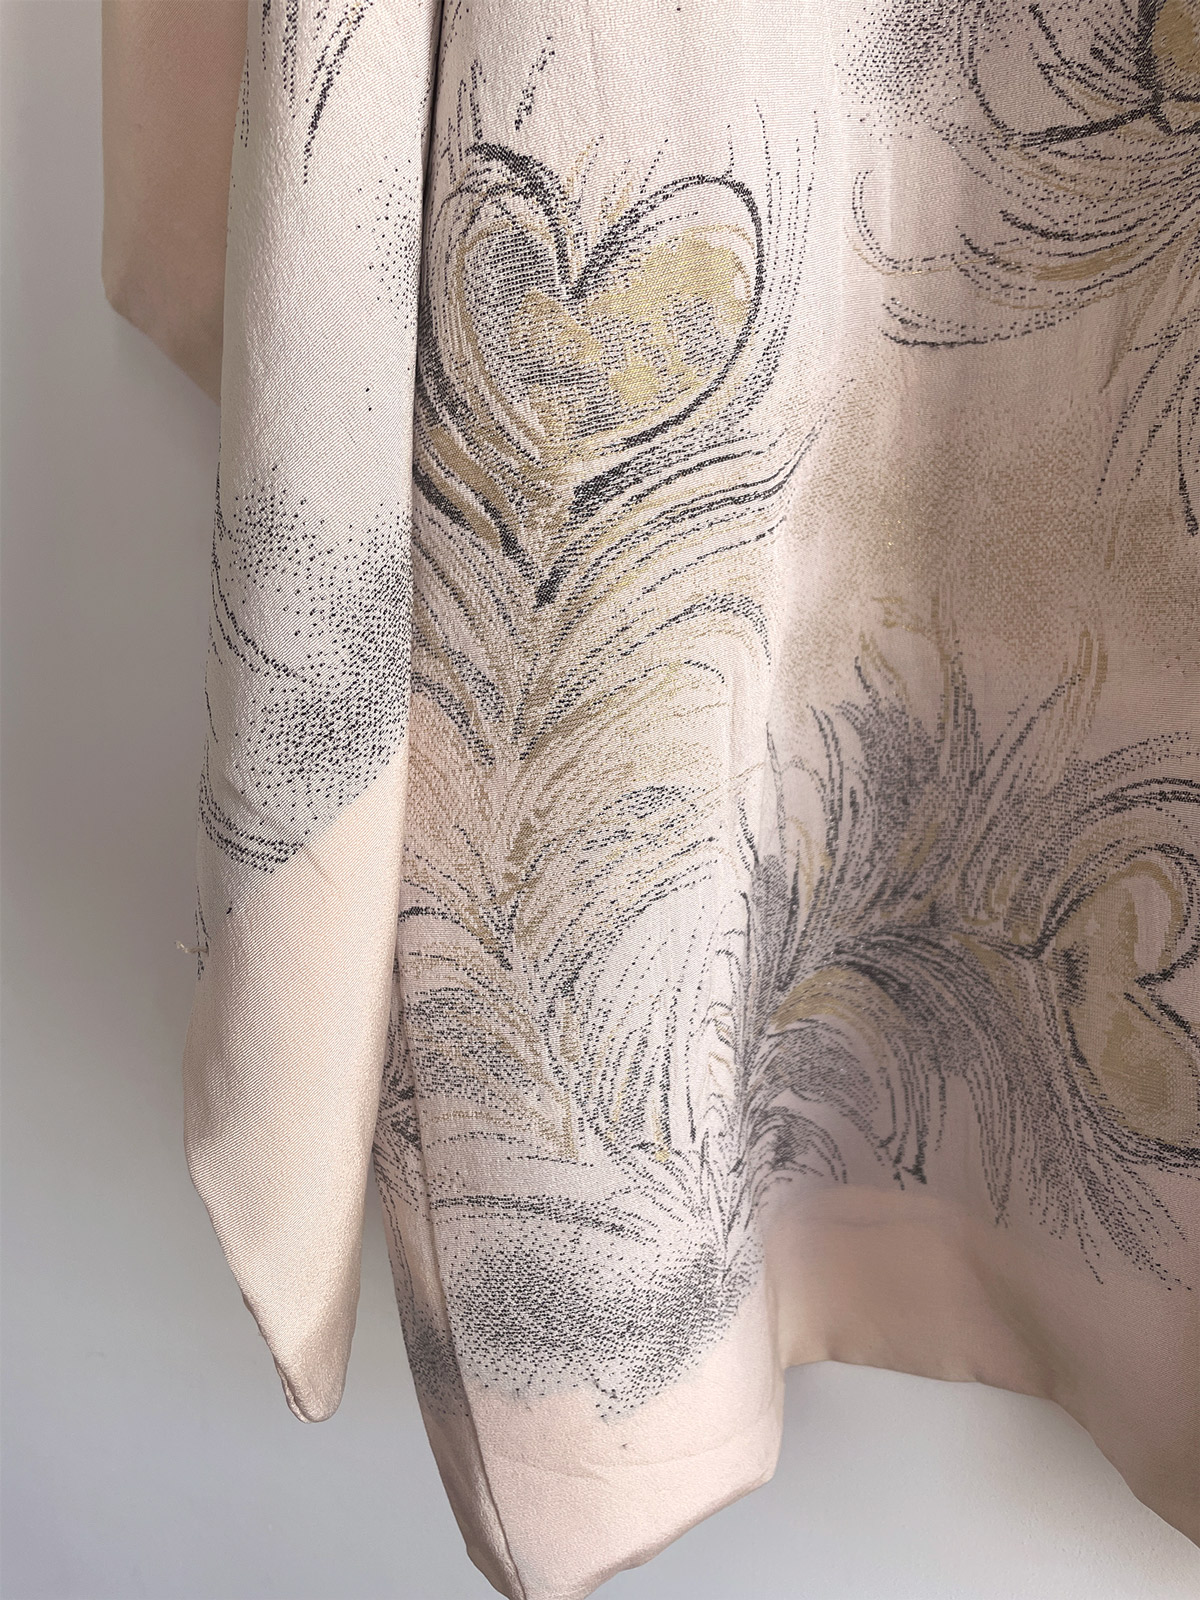 Akemi – silk Haori (Kimono jacket) with feather design